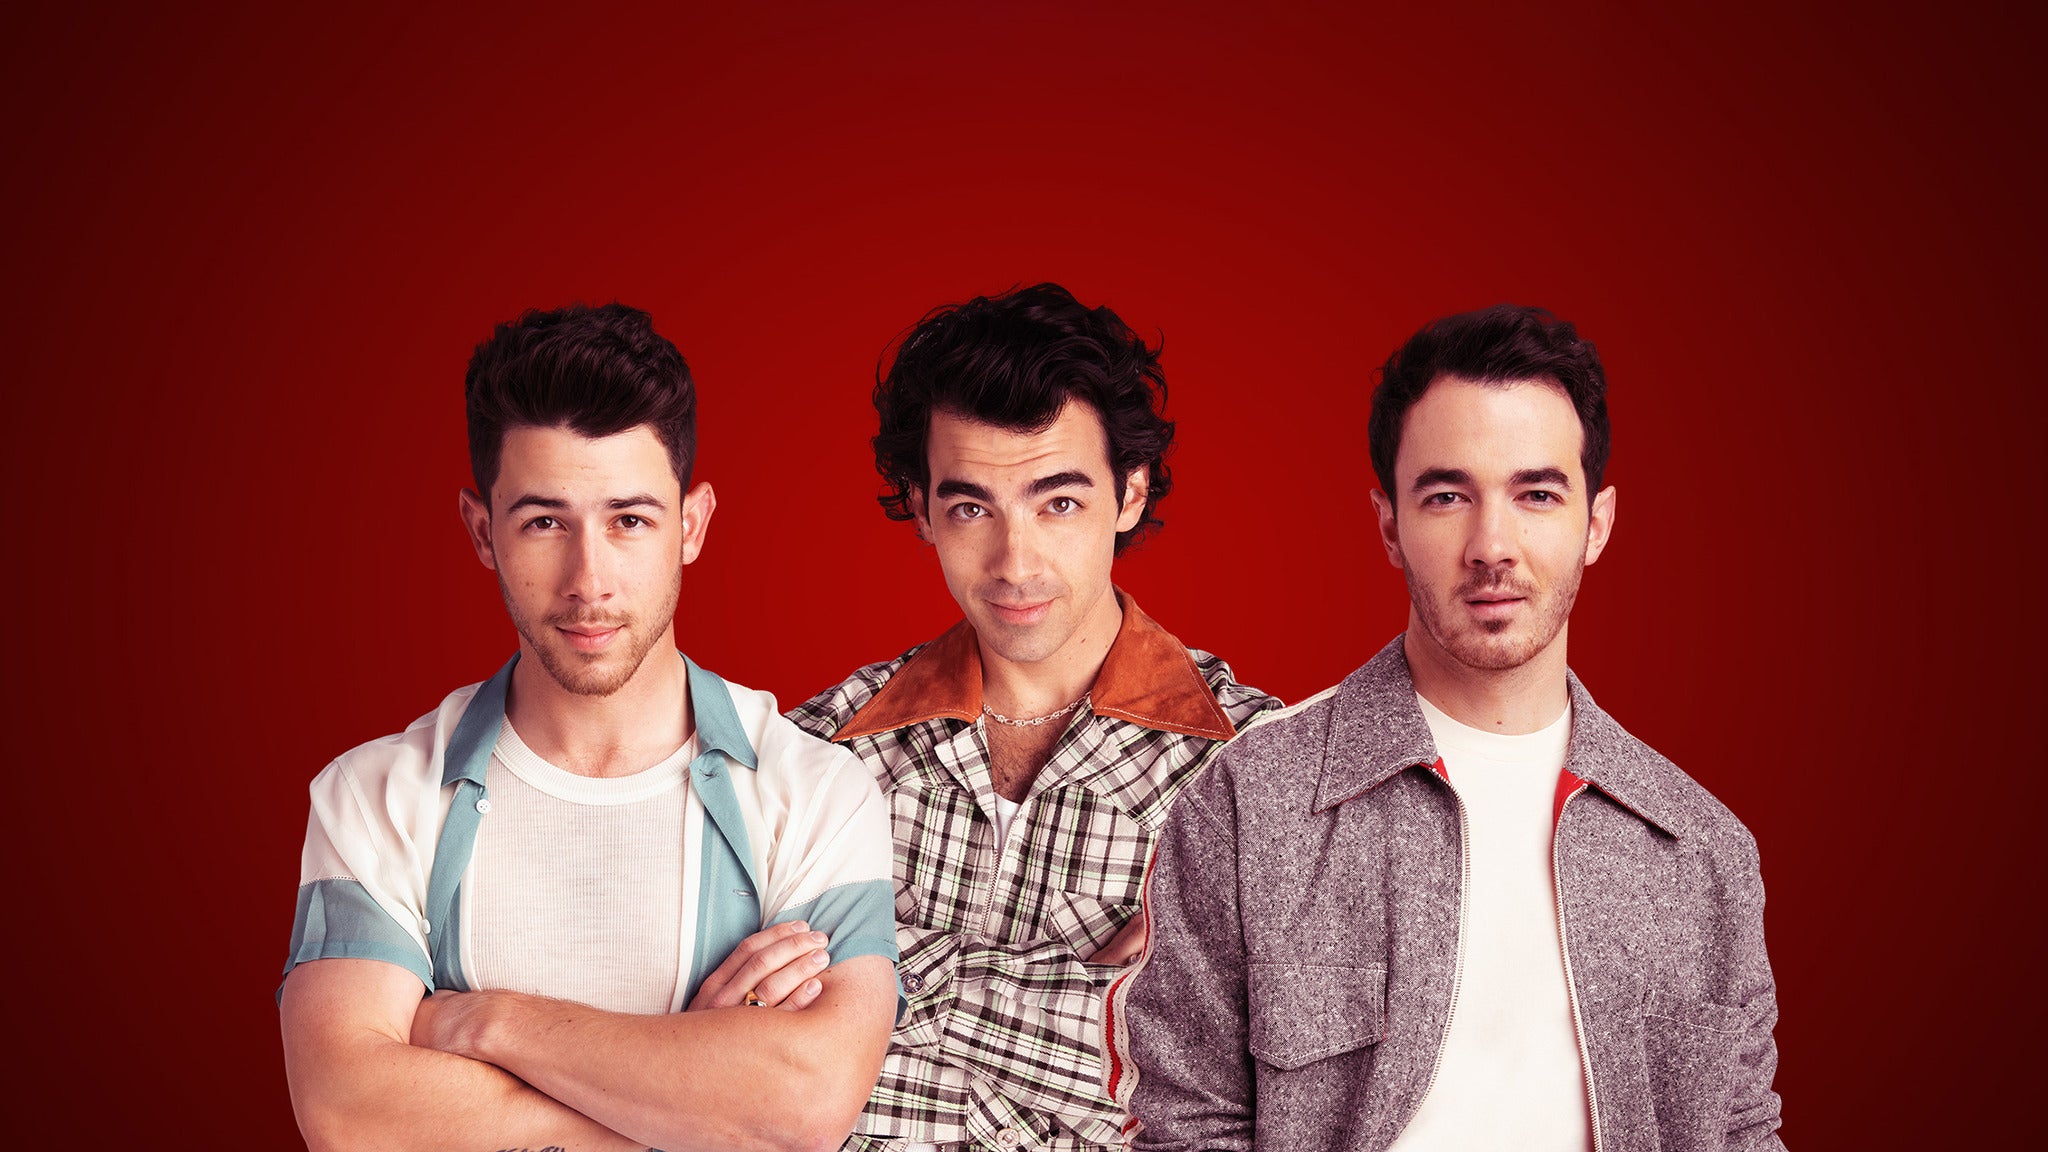 Jonas Brothers - Live in Vegas in Las Vegas promo photo for Citi® Cardmember Preferred presale offer code